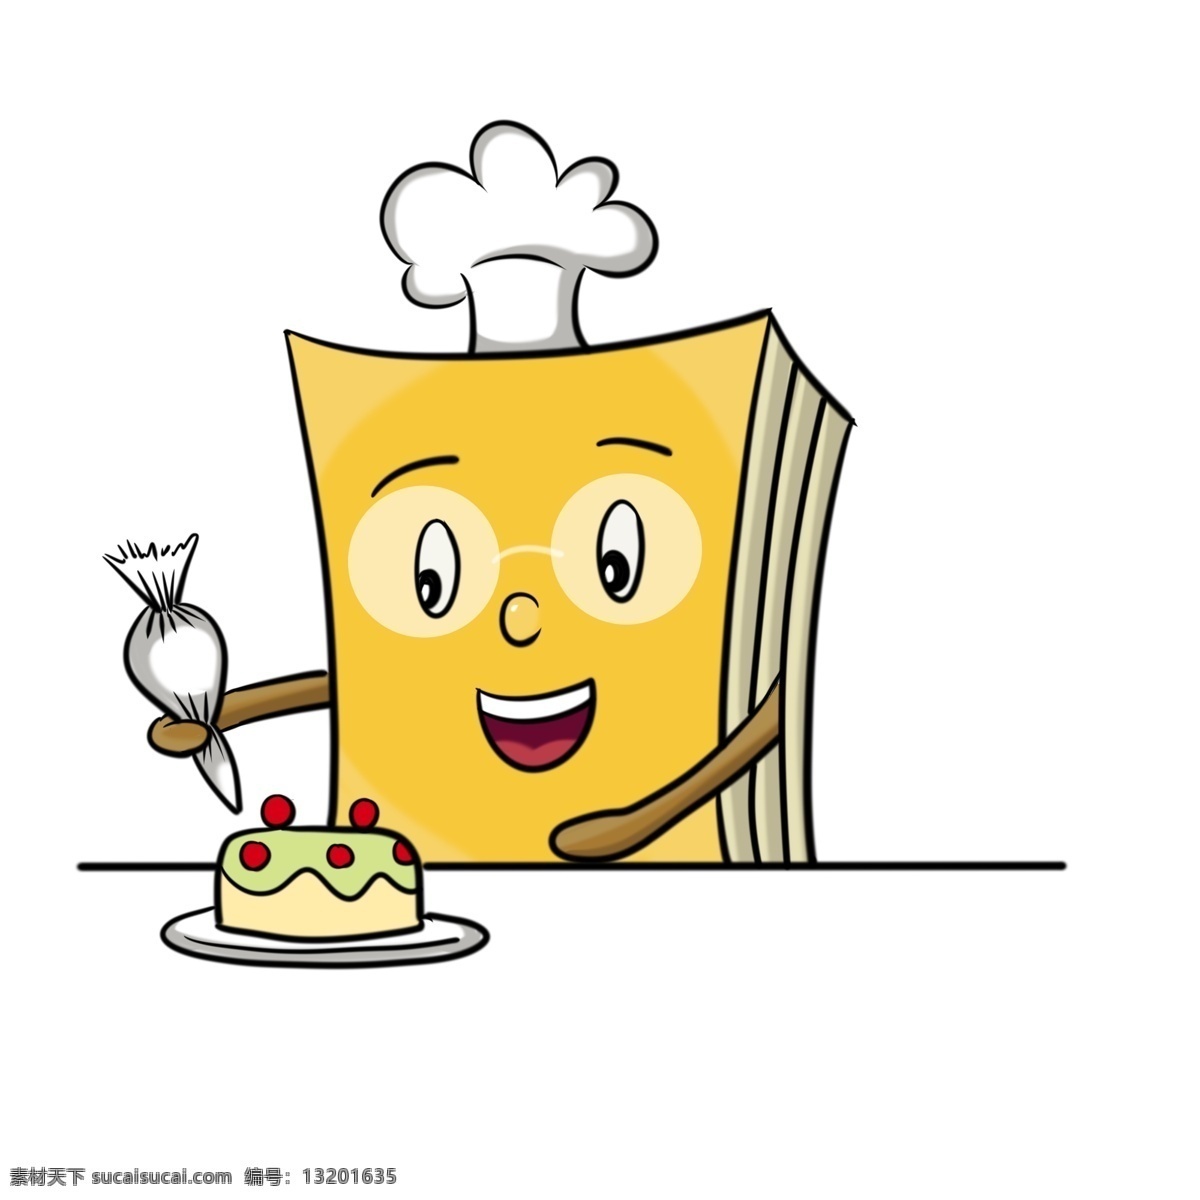 做 蛋糕 书本 装饰 插画 做蛋糕的书本 黄色的书本 漂亮的书本 创意书本 立体书本 卡通书本 书本插画